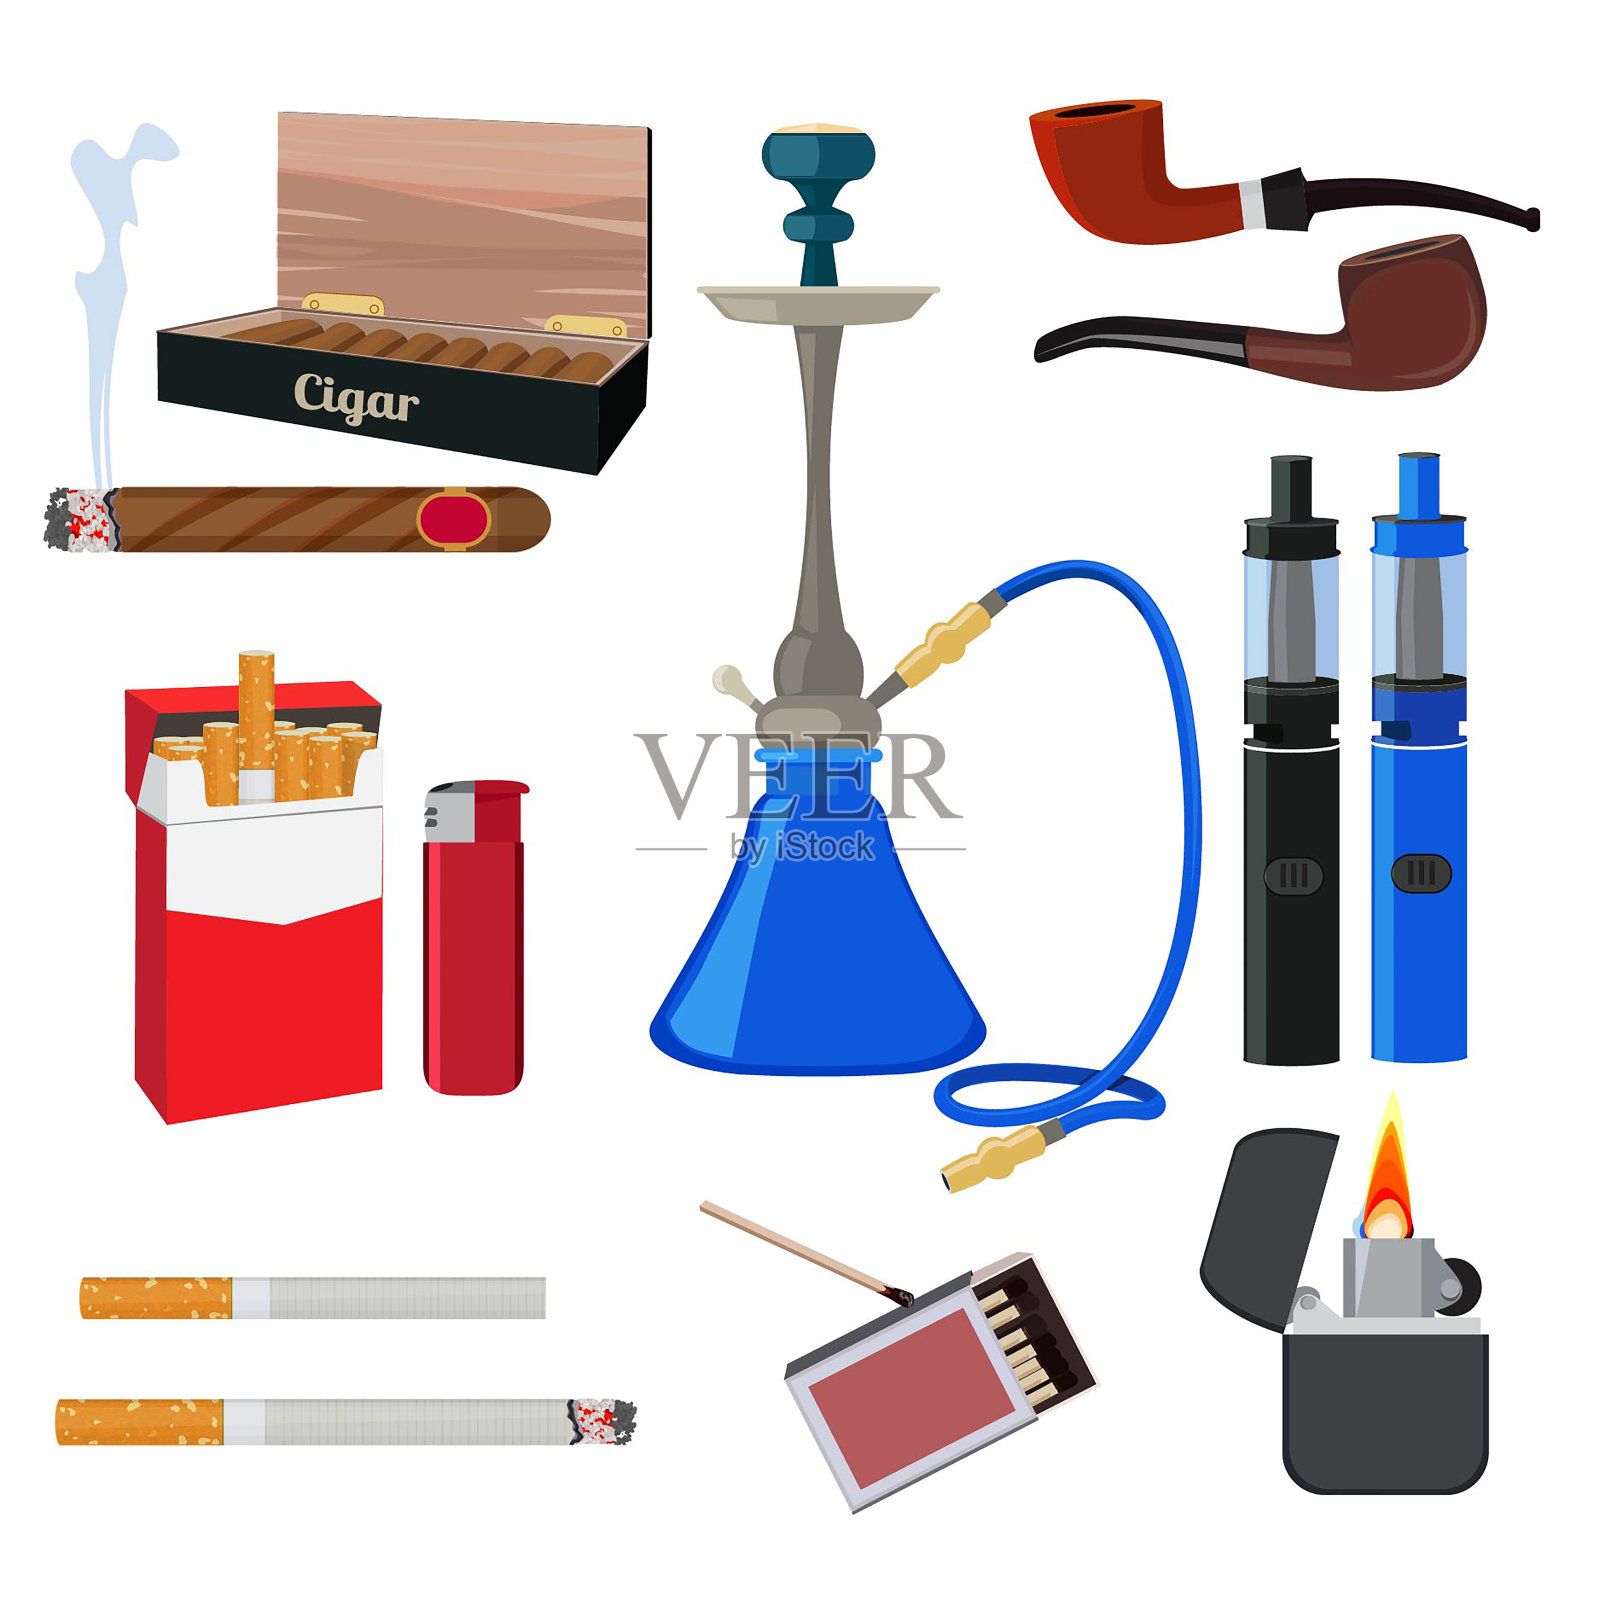 水烟、烟草、香烟等不同的吸烟工具插画图片素材